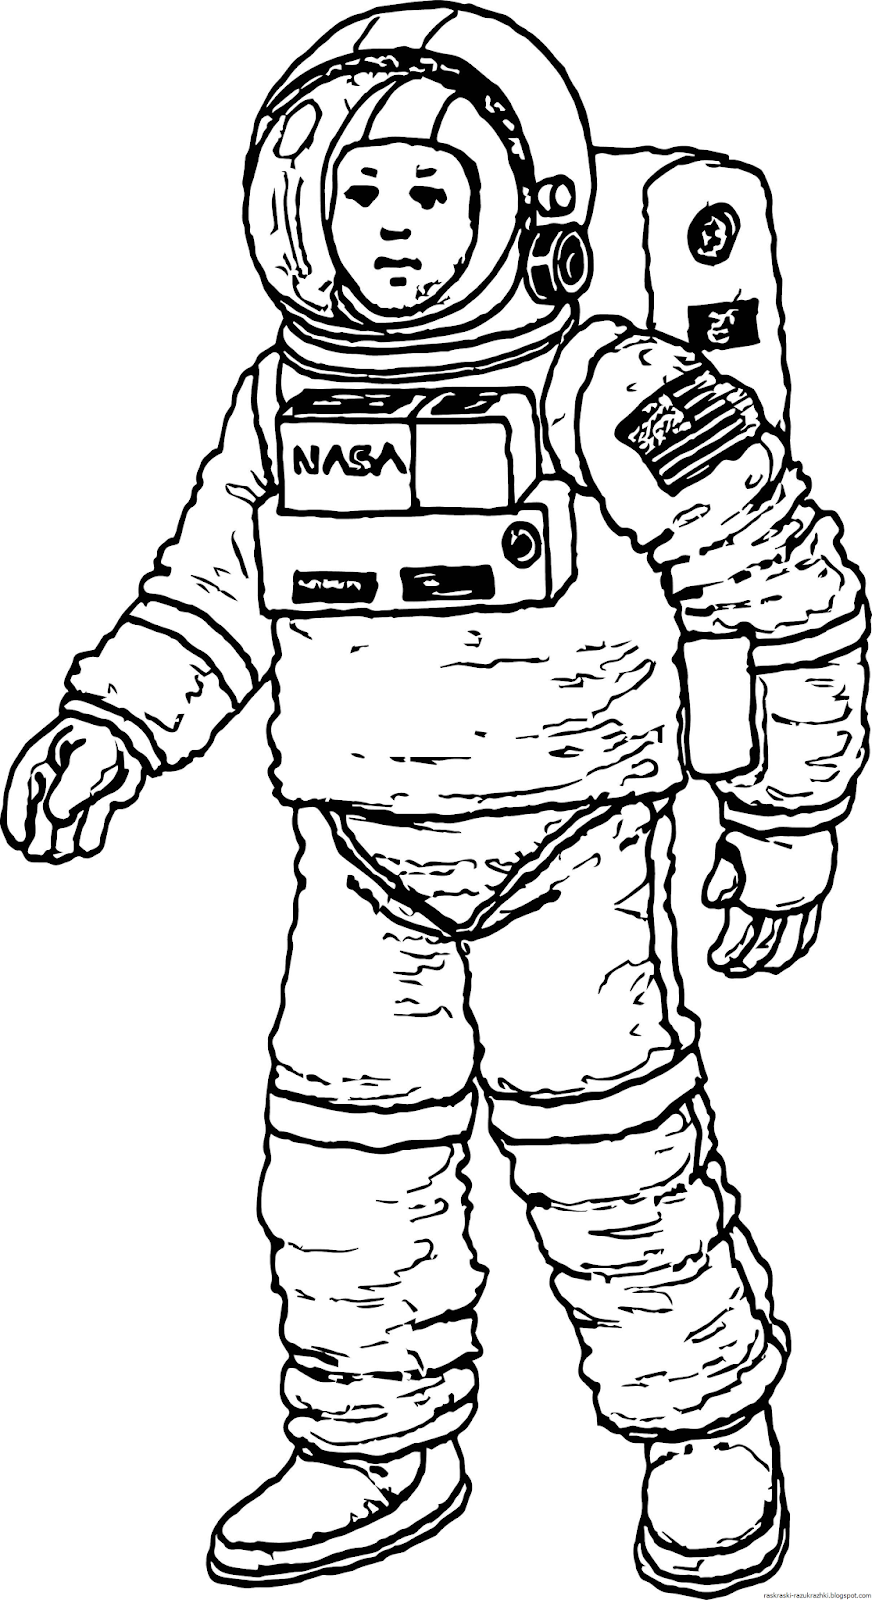 Скафандр картинка для детей. Космонавт раскраска для детей. Раскраска про космос и Космонавтов для детей. Космонавт рисунок. Рисунок Космонавта в скафандре для детей.